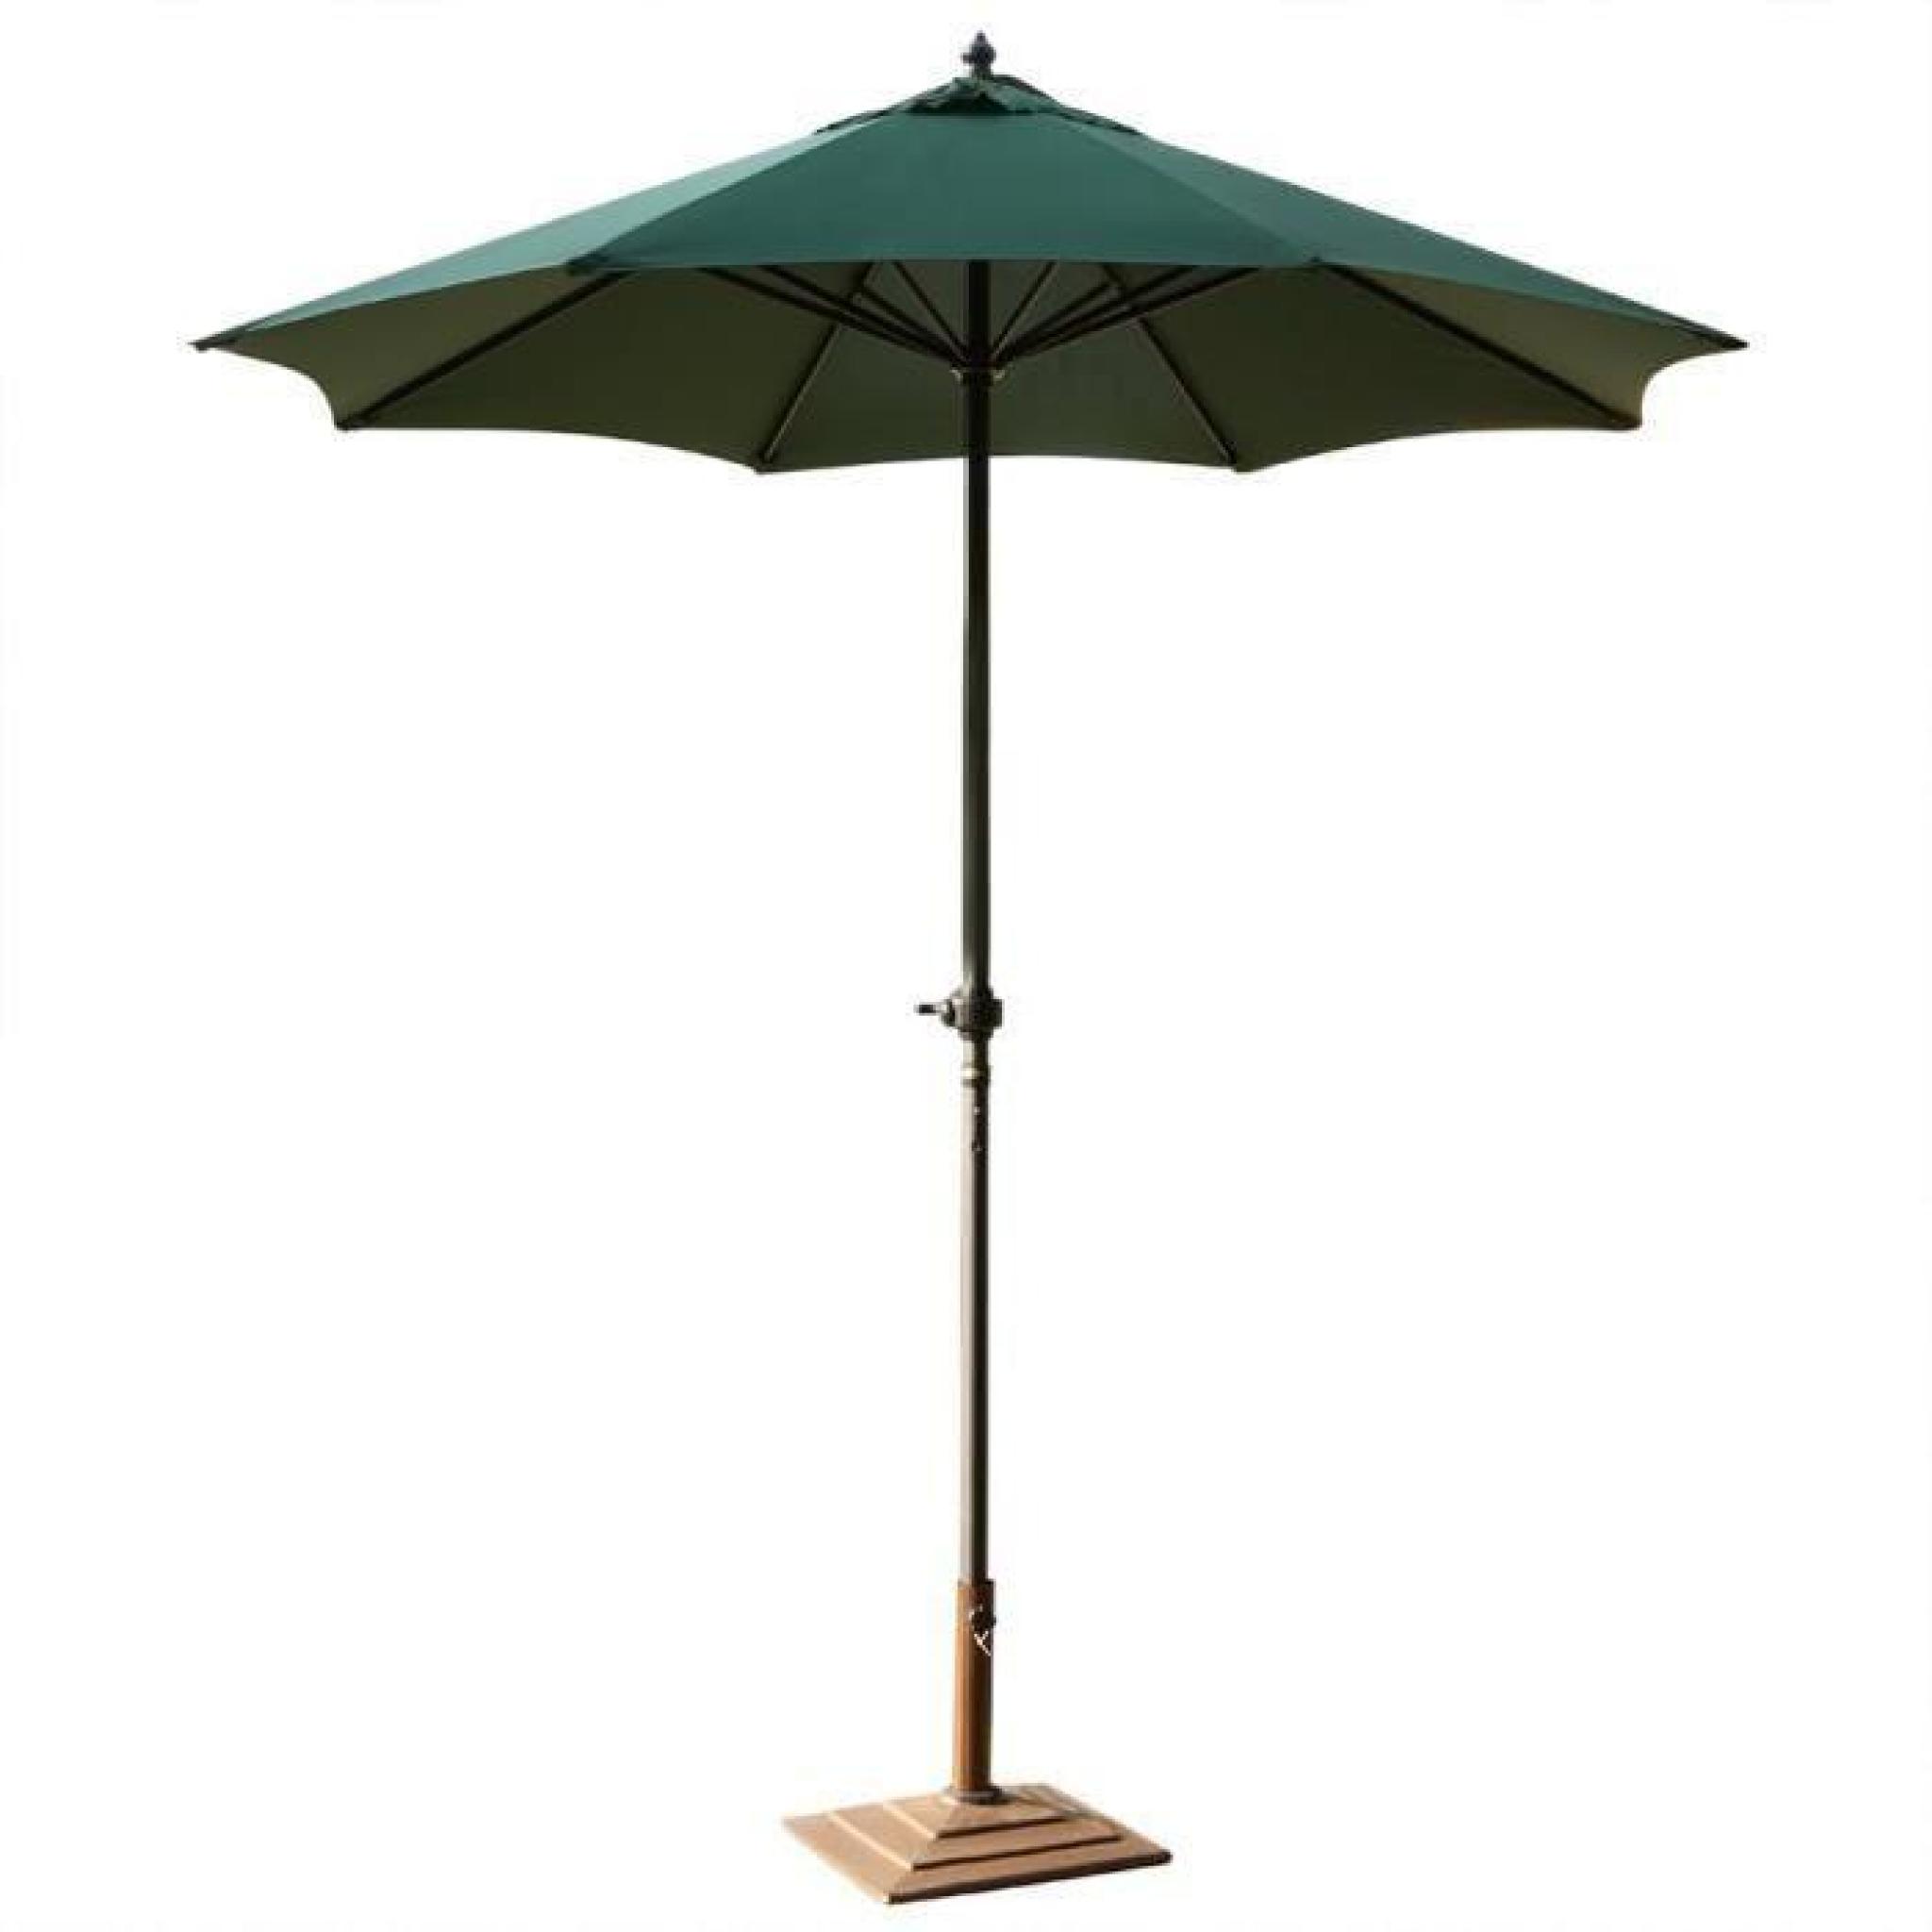 Pliage acier pôle Patio parapluie extérieur Mobilier jardin plage Canopy pare-soleil